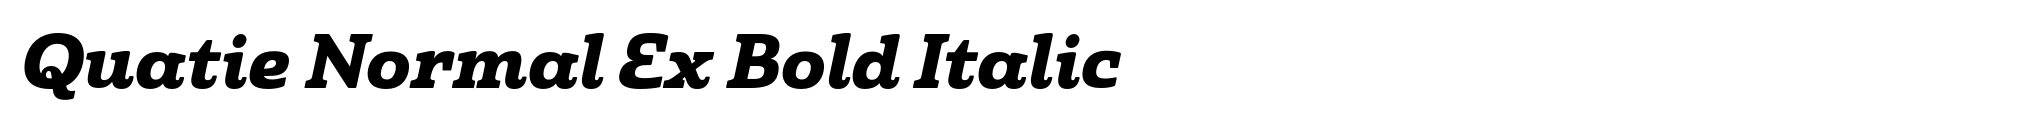 Quatie Normal Ex Bold Italic image